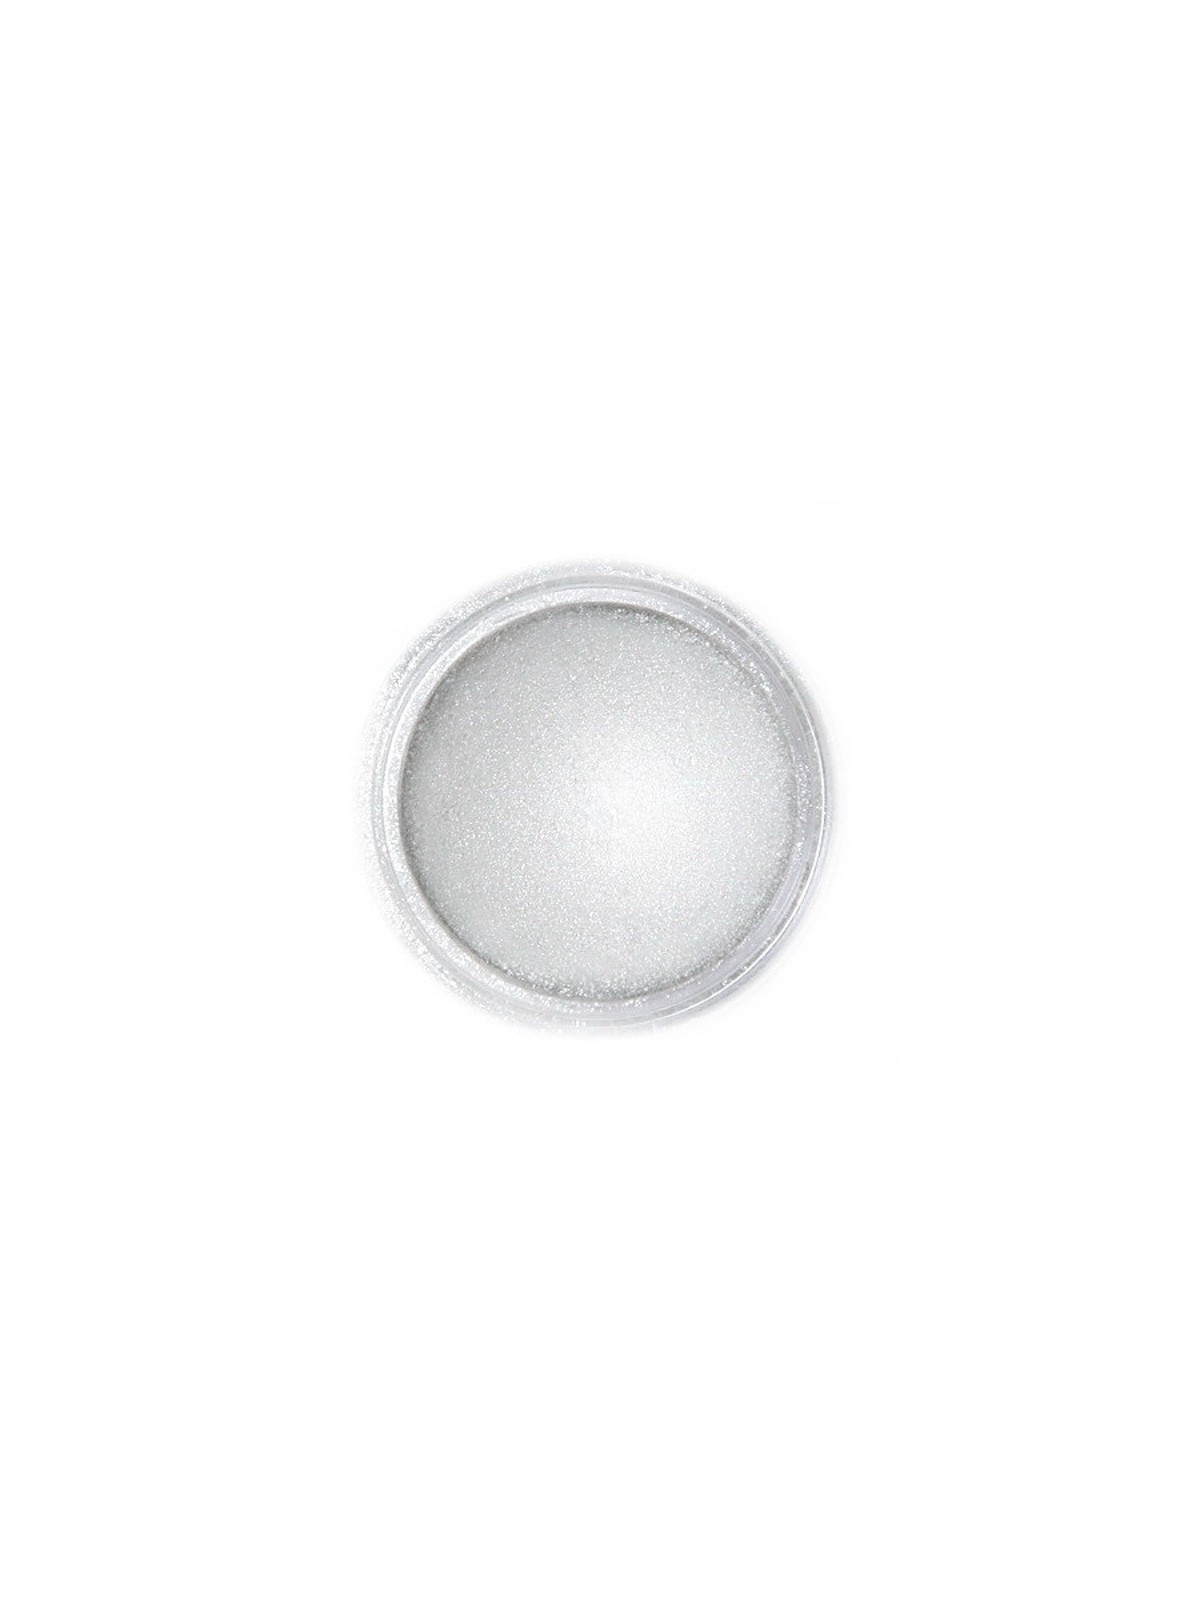 Dekorativní prachová perleťová barva Fractal - Light Silver, Világos metál ezüst (3 g)